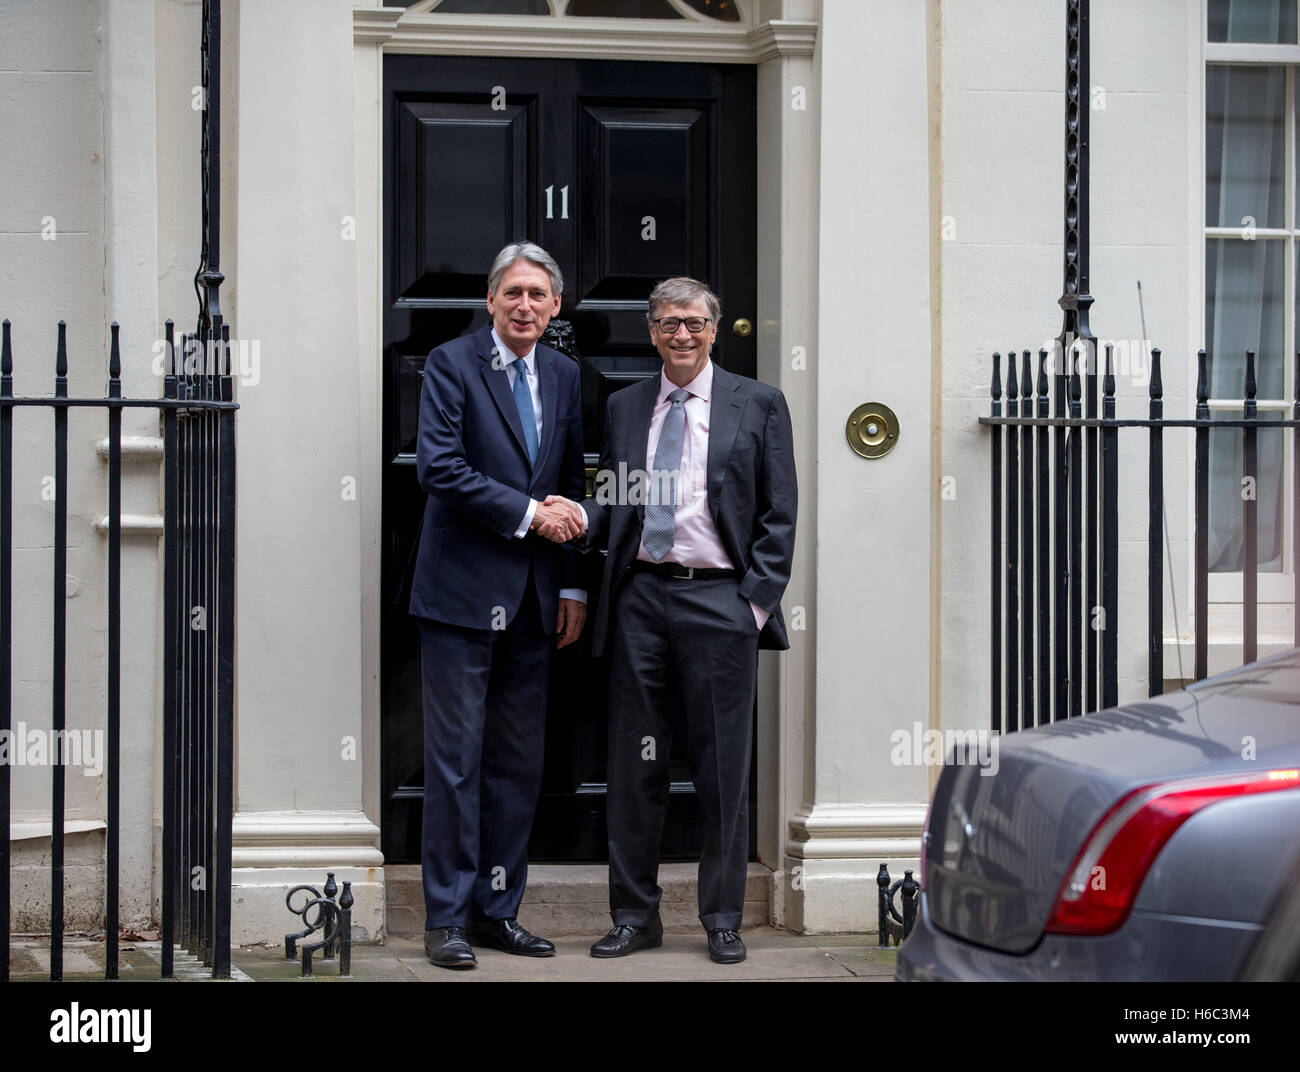 Schütteln Sie Kanzler des Finanzministeriums, Phillip Hammond und Milliardär Bill Gates, Hände, auf der Stufe des 11 Downing Street, London Stockfoto